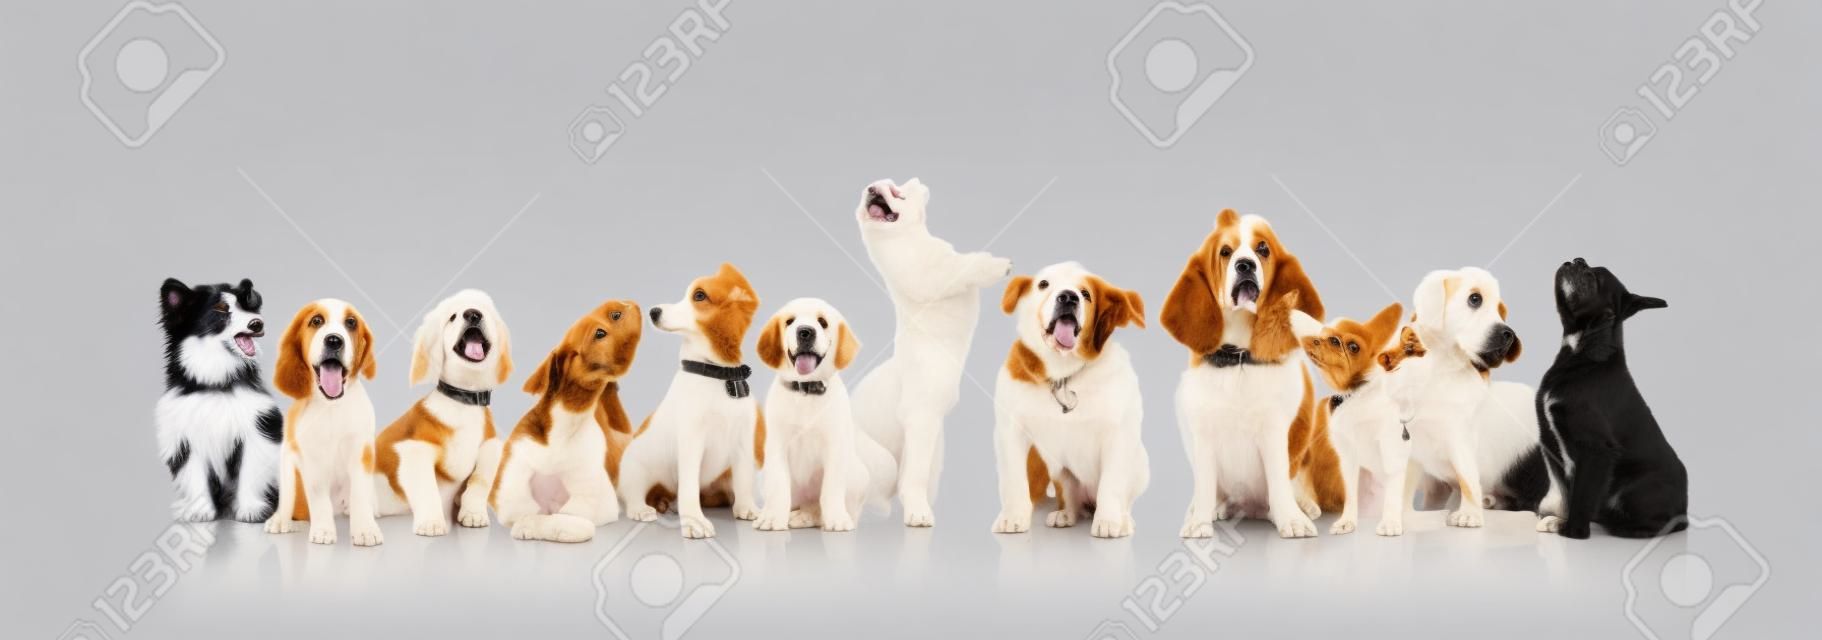 grand groupe de chiens et chiots curieux regardant quelque chose sur fond blanc